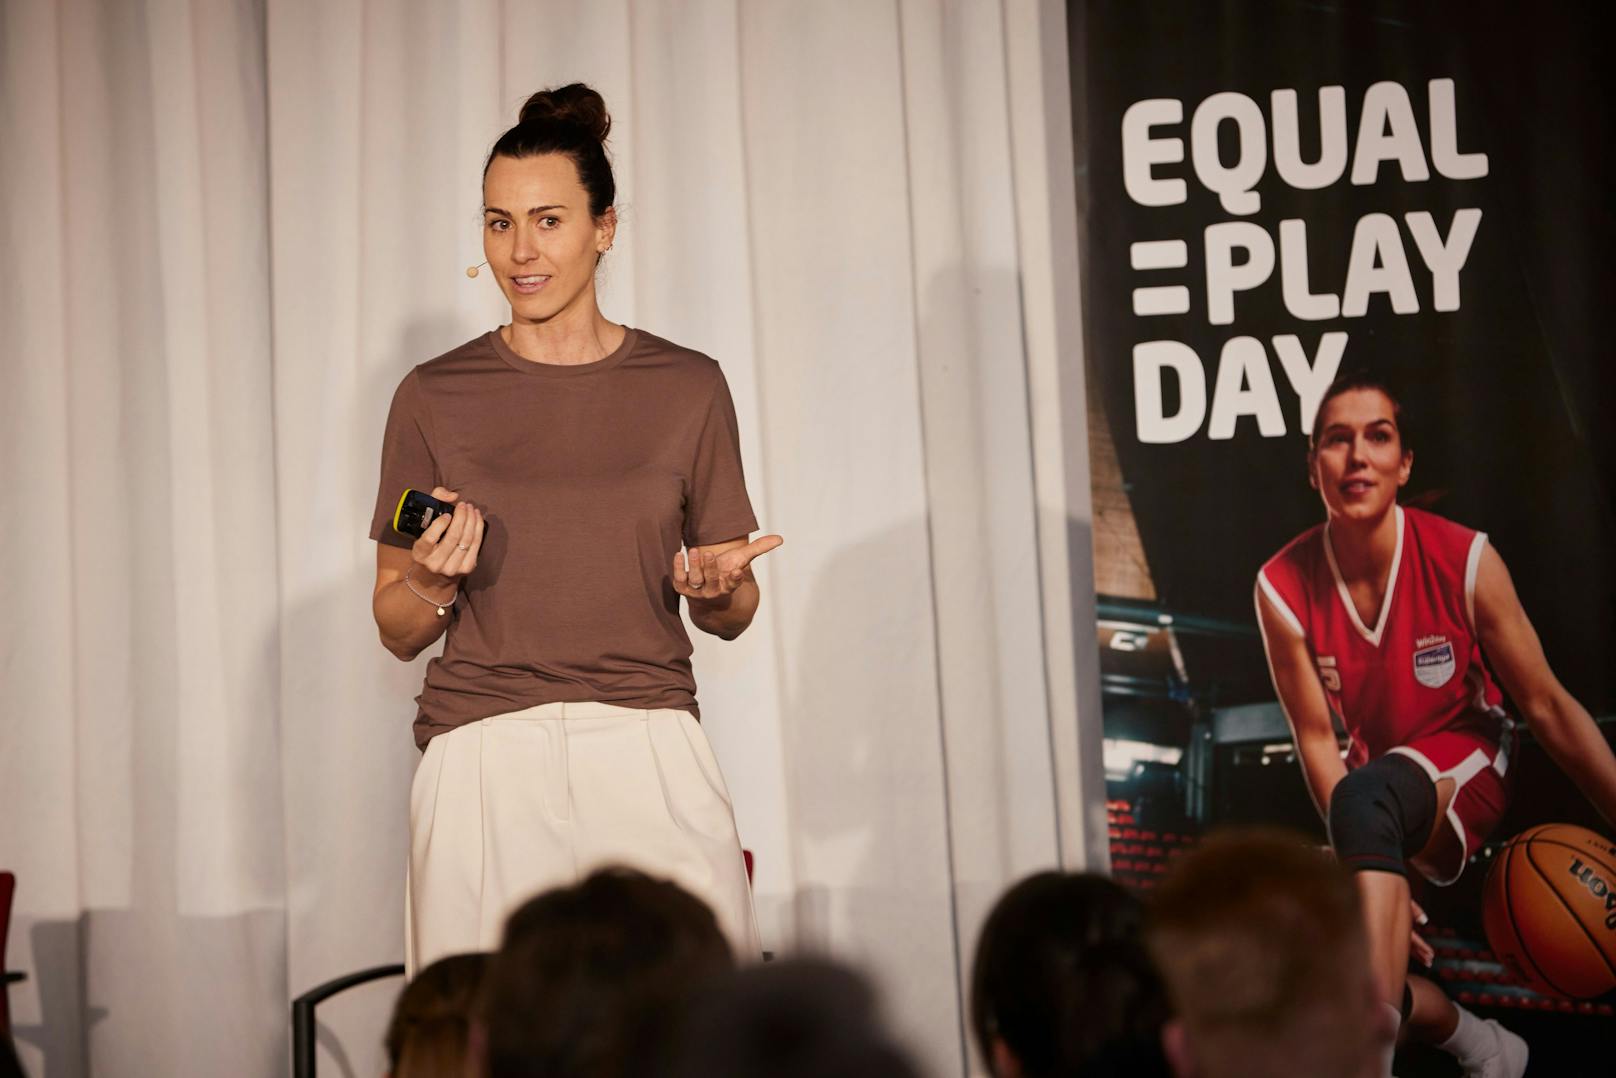 Präsentation der Equal Play Initiative von win2day für mehr Gleichberechtigung im österreichischen Sport